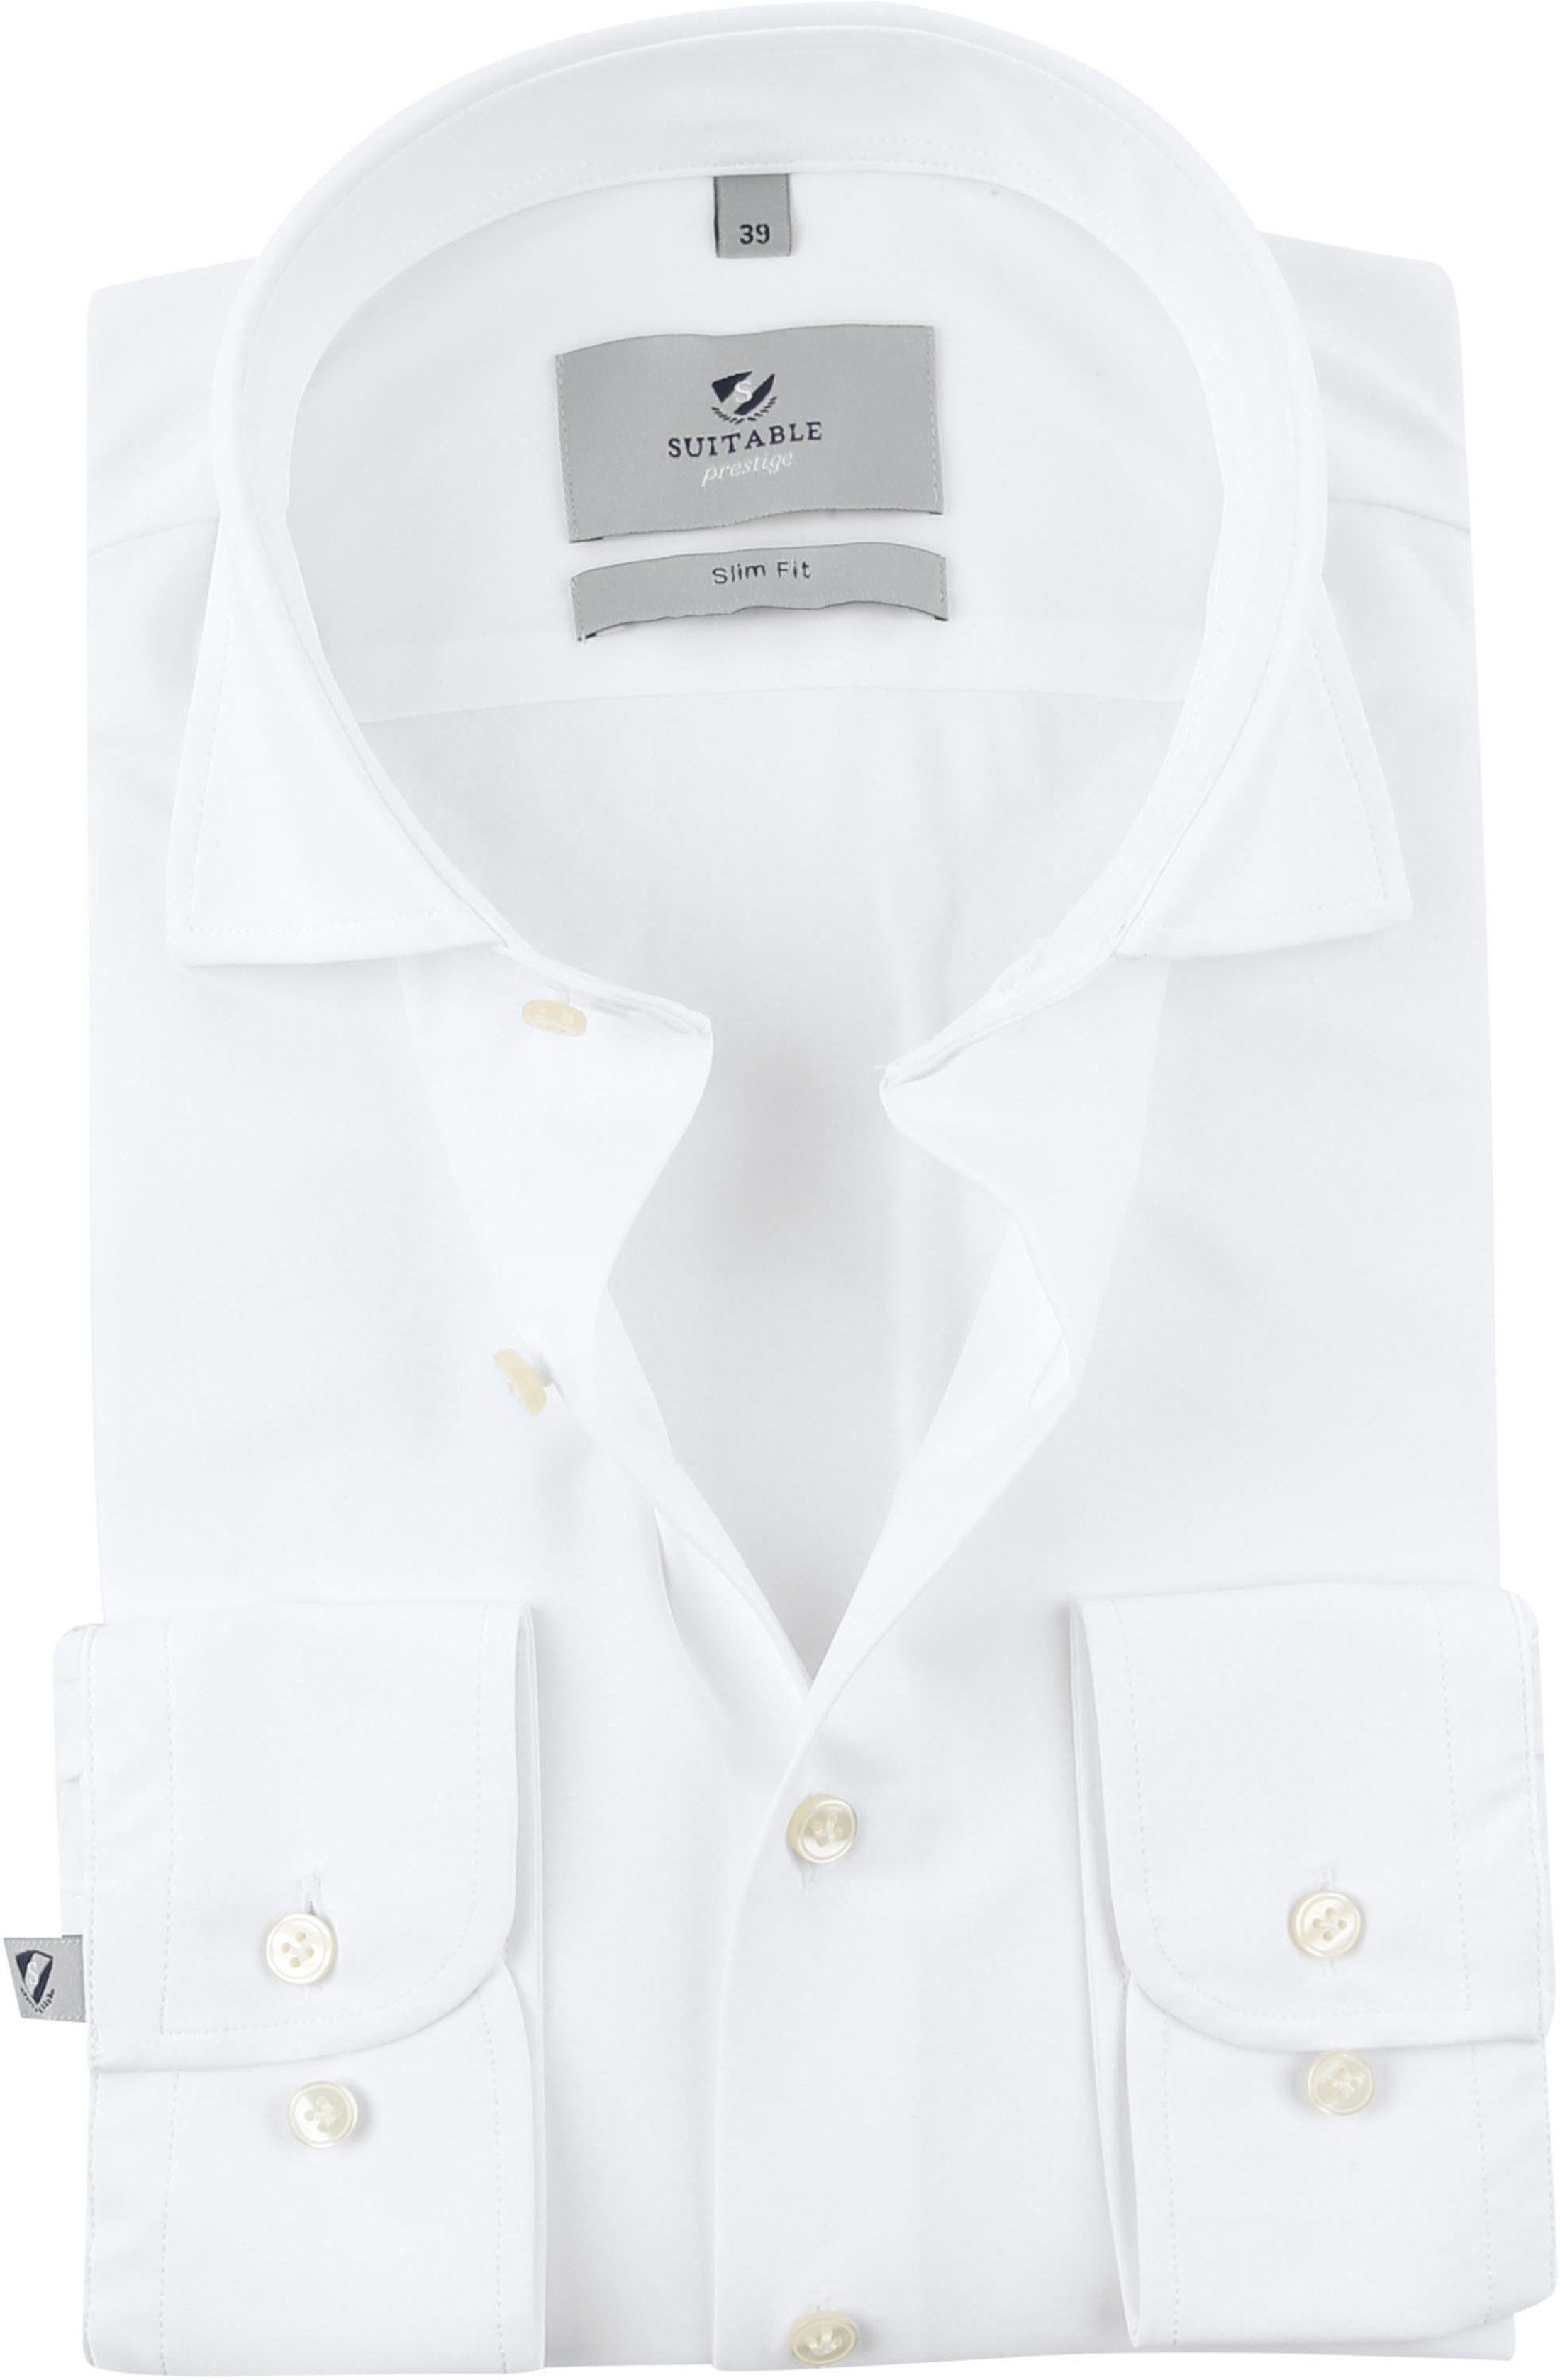 Suitable Prestige Shirt White size 16 1/2